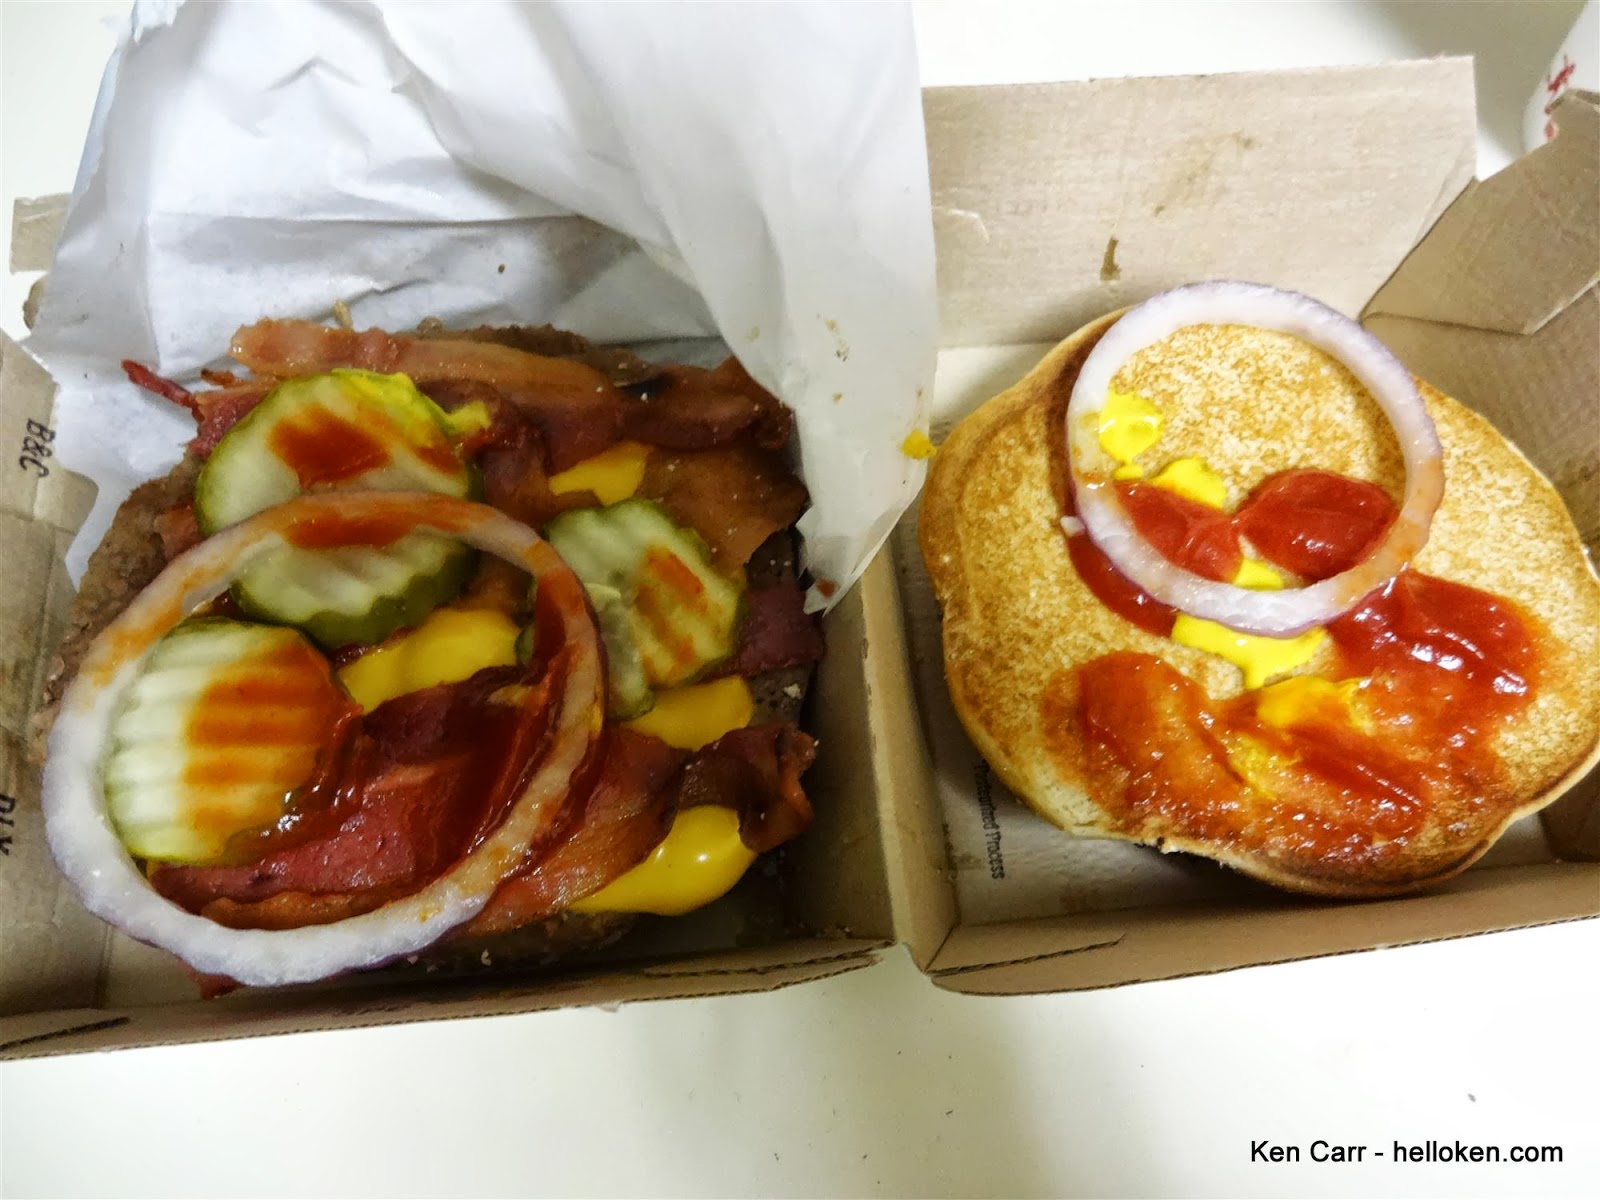 Ken Carr Blog: McDonald's Bacon and Cheese Quarter Pounder